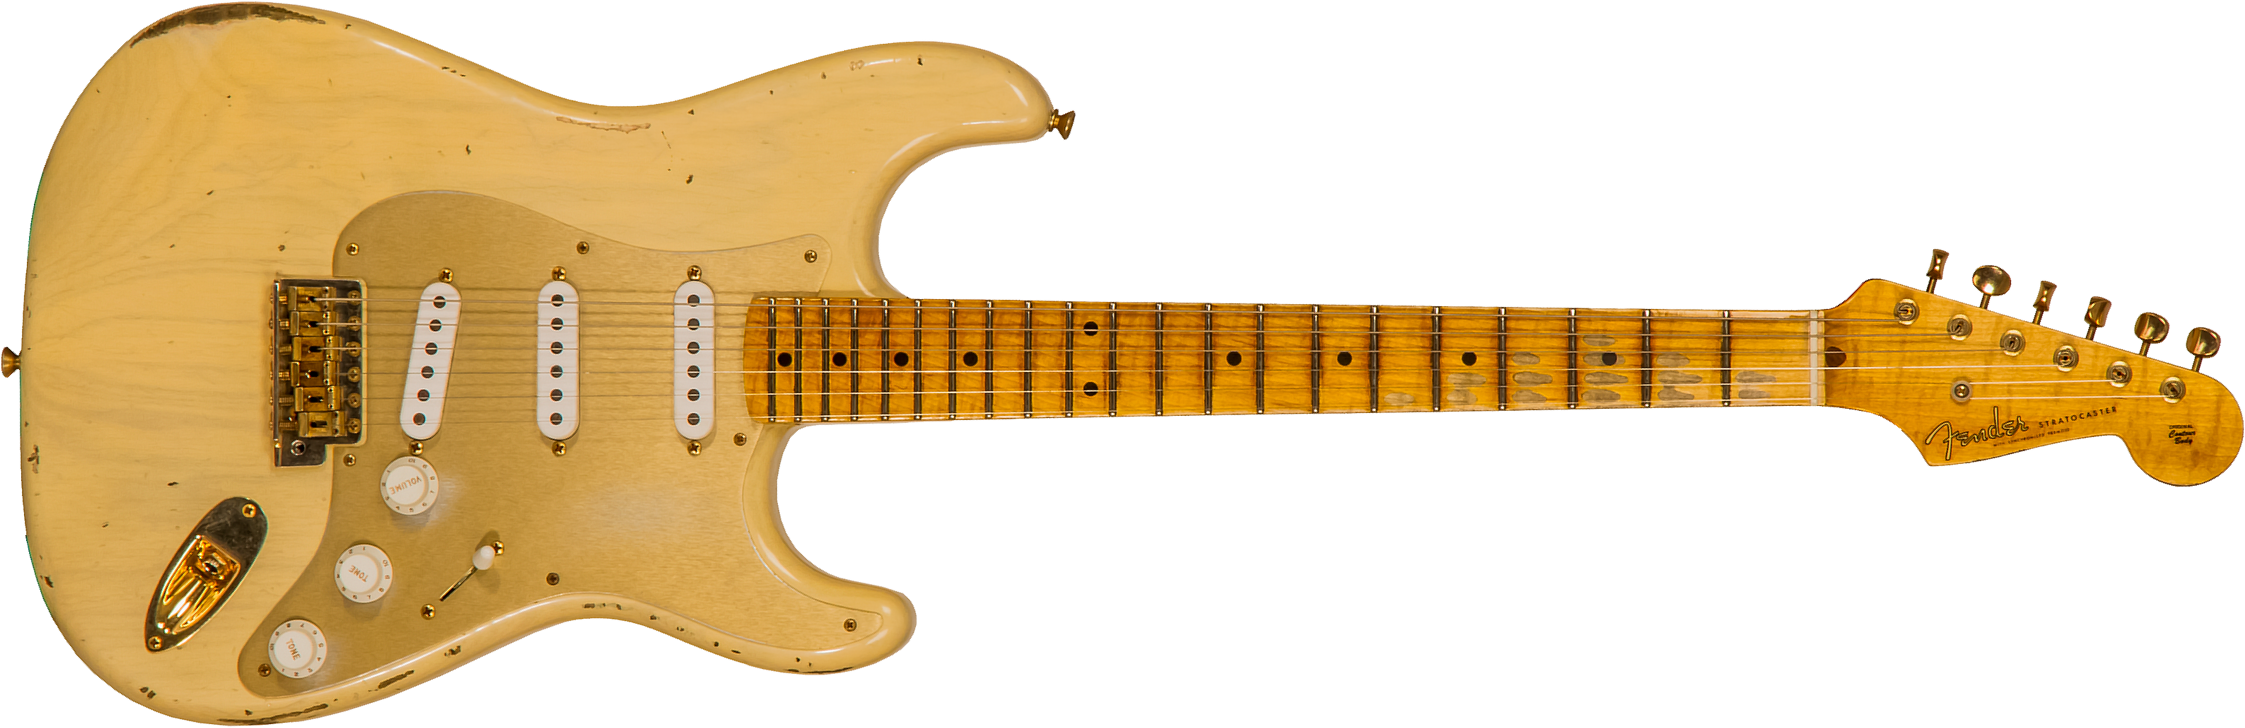 Fender Custom Shop Strat 1955 Bone Tone Usa 3s Trem Mn #cz554628 - Relic Honey Blonde W/ Gold Hardware - Elektrische gitaar in Str-vorm - Main picture